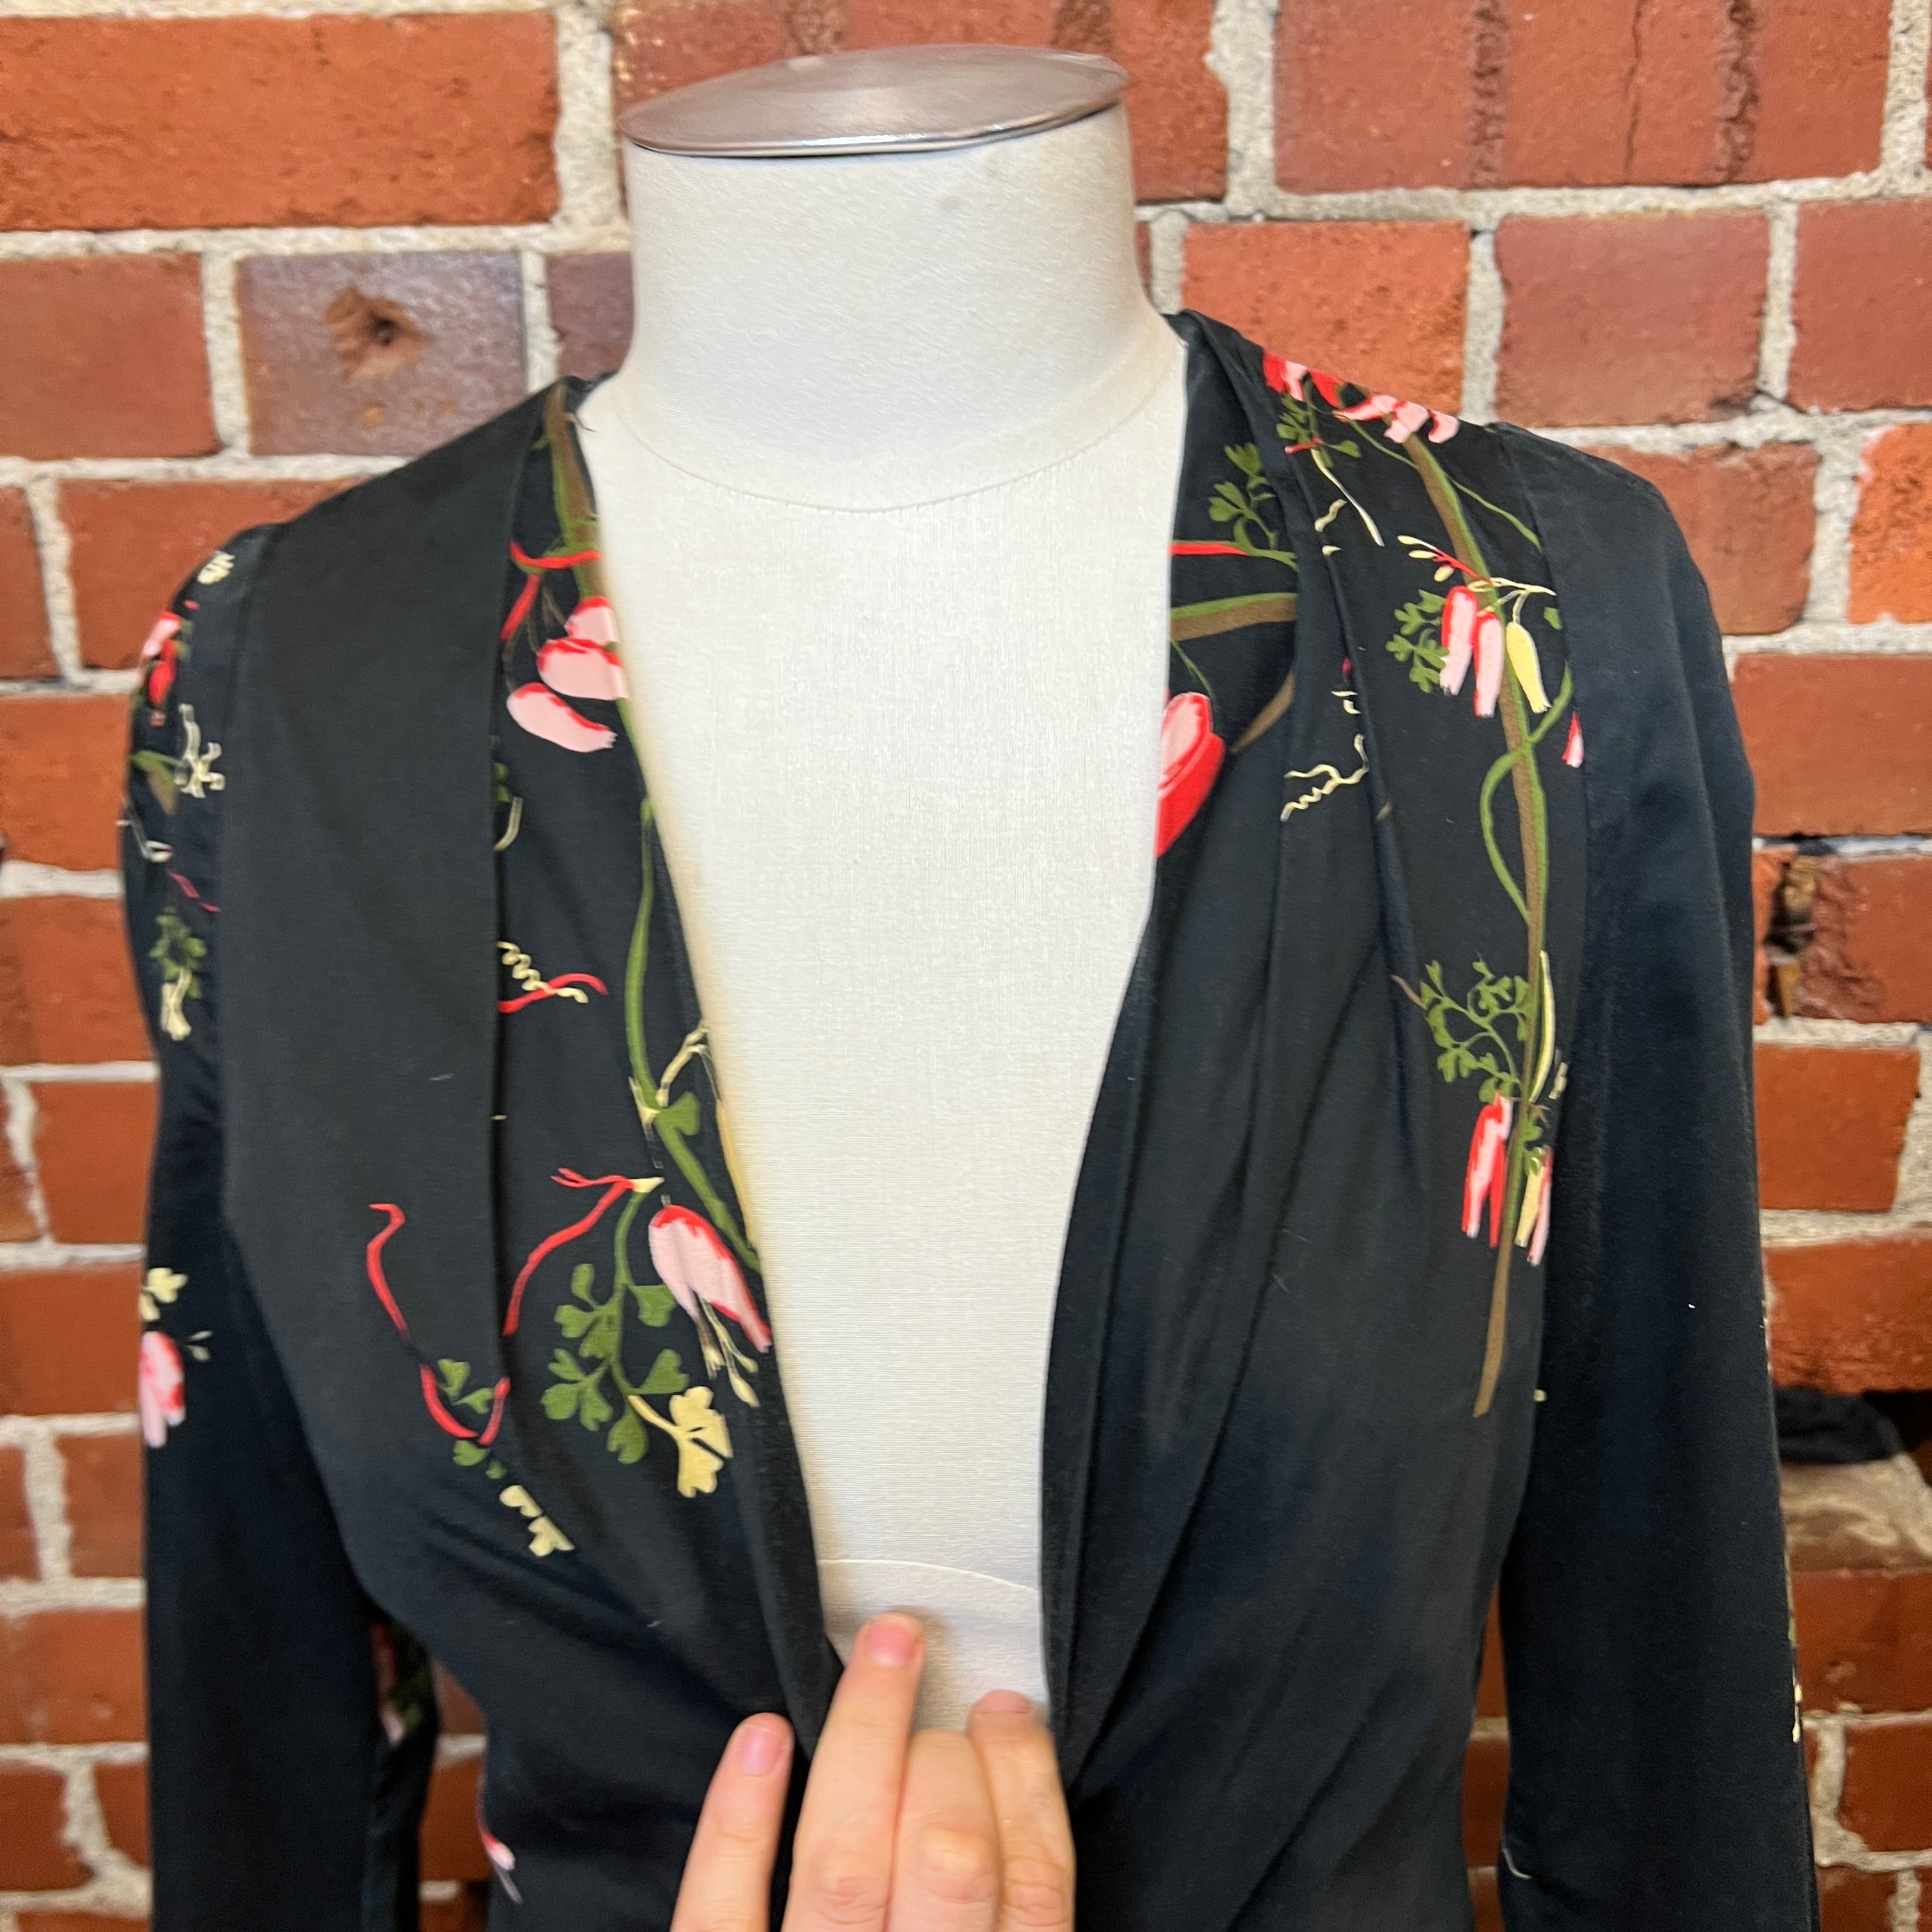 VIVIENNE WESTWOOD rose printed corset top